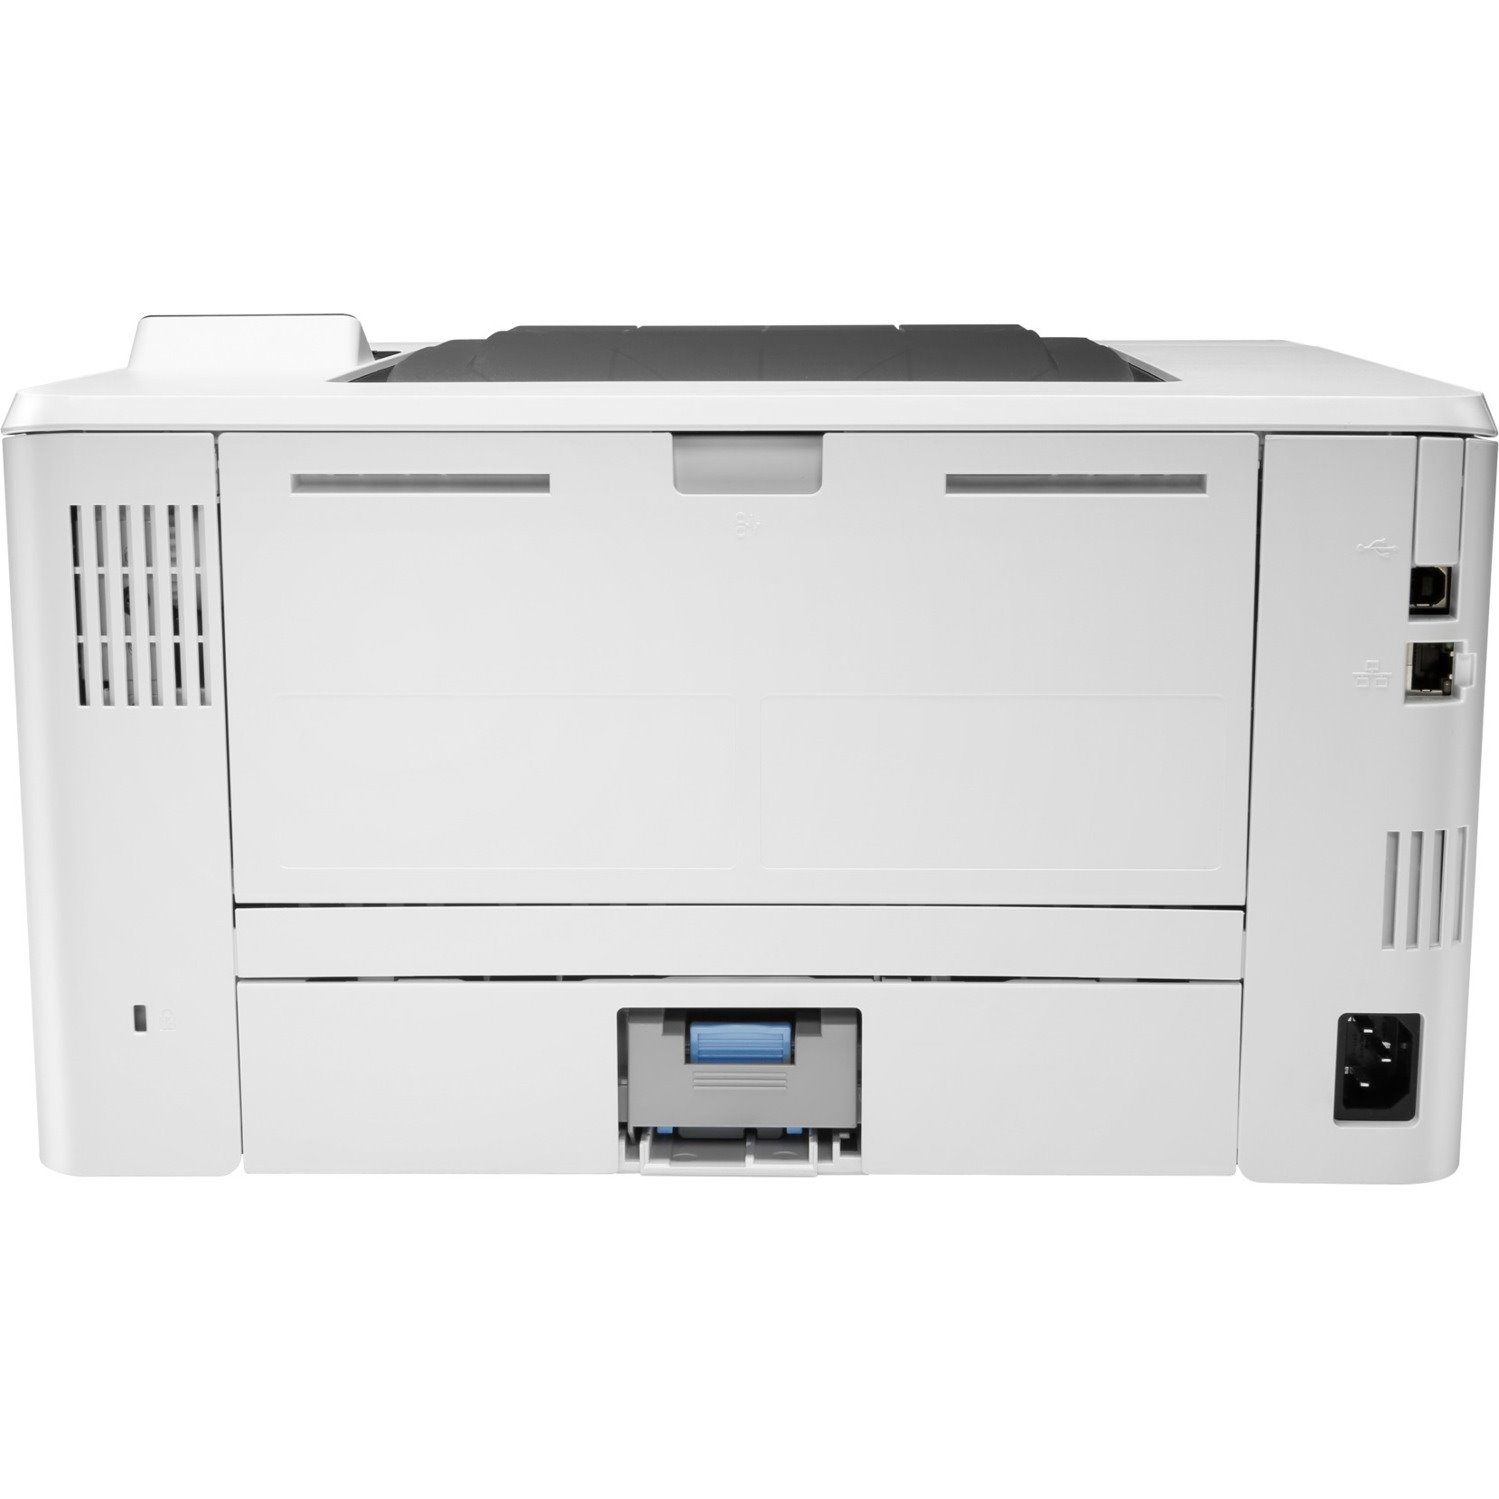 HP LaserJet Pro M404 M404n Desktop Laser Printer - Monochrome